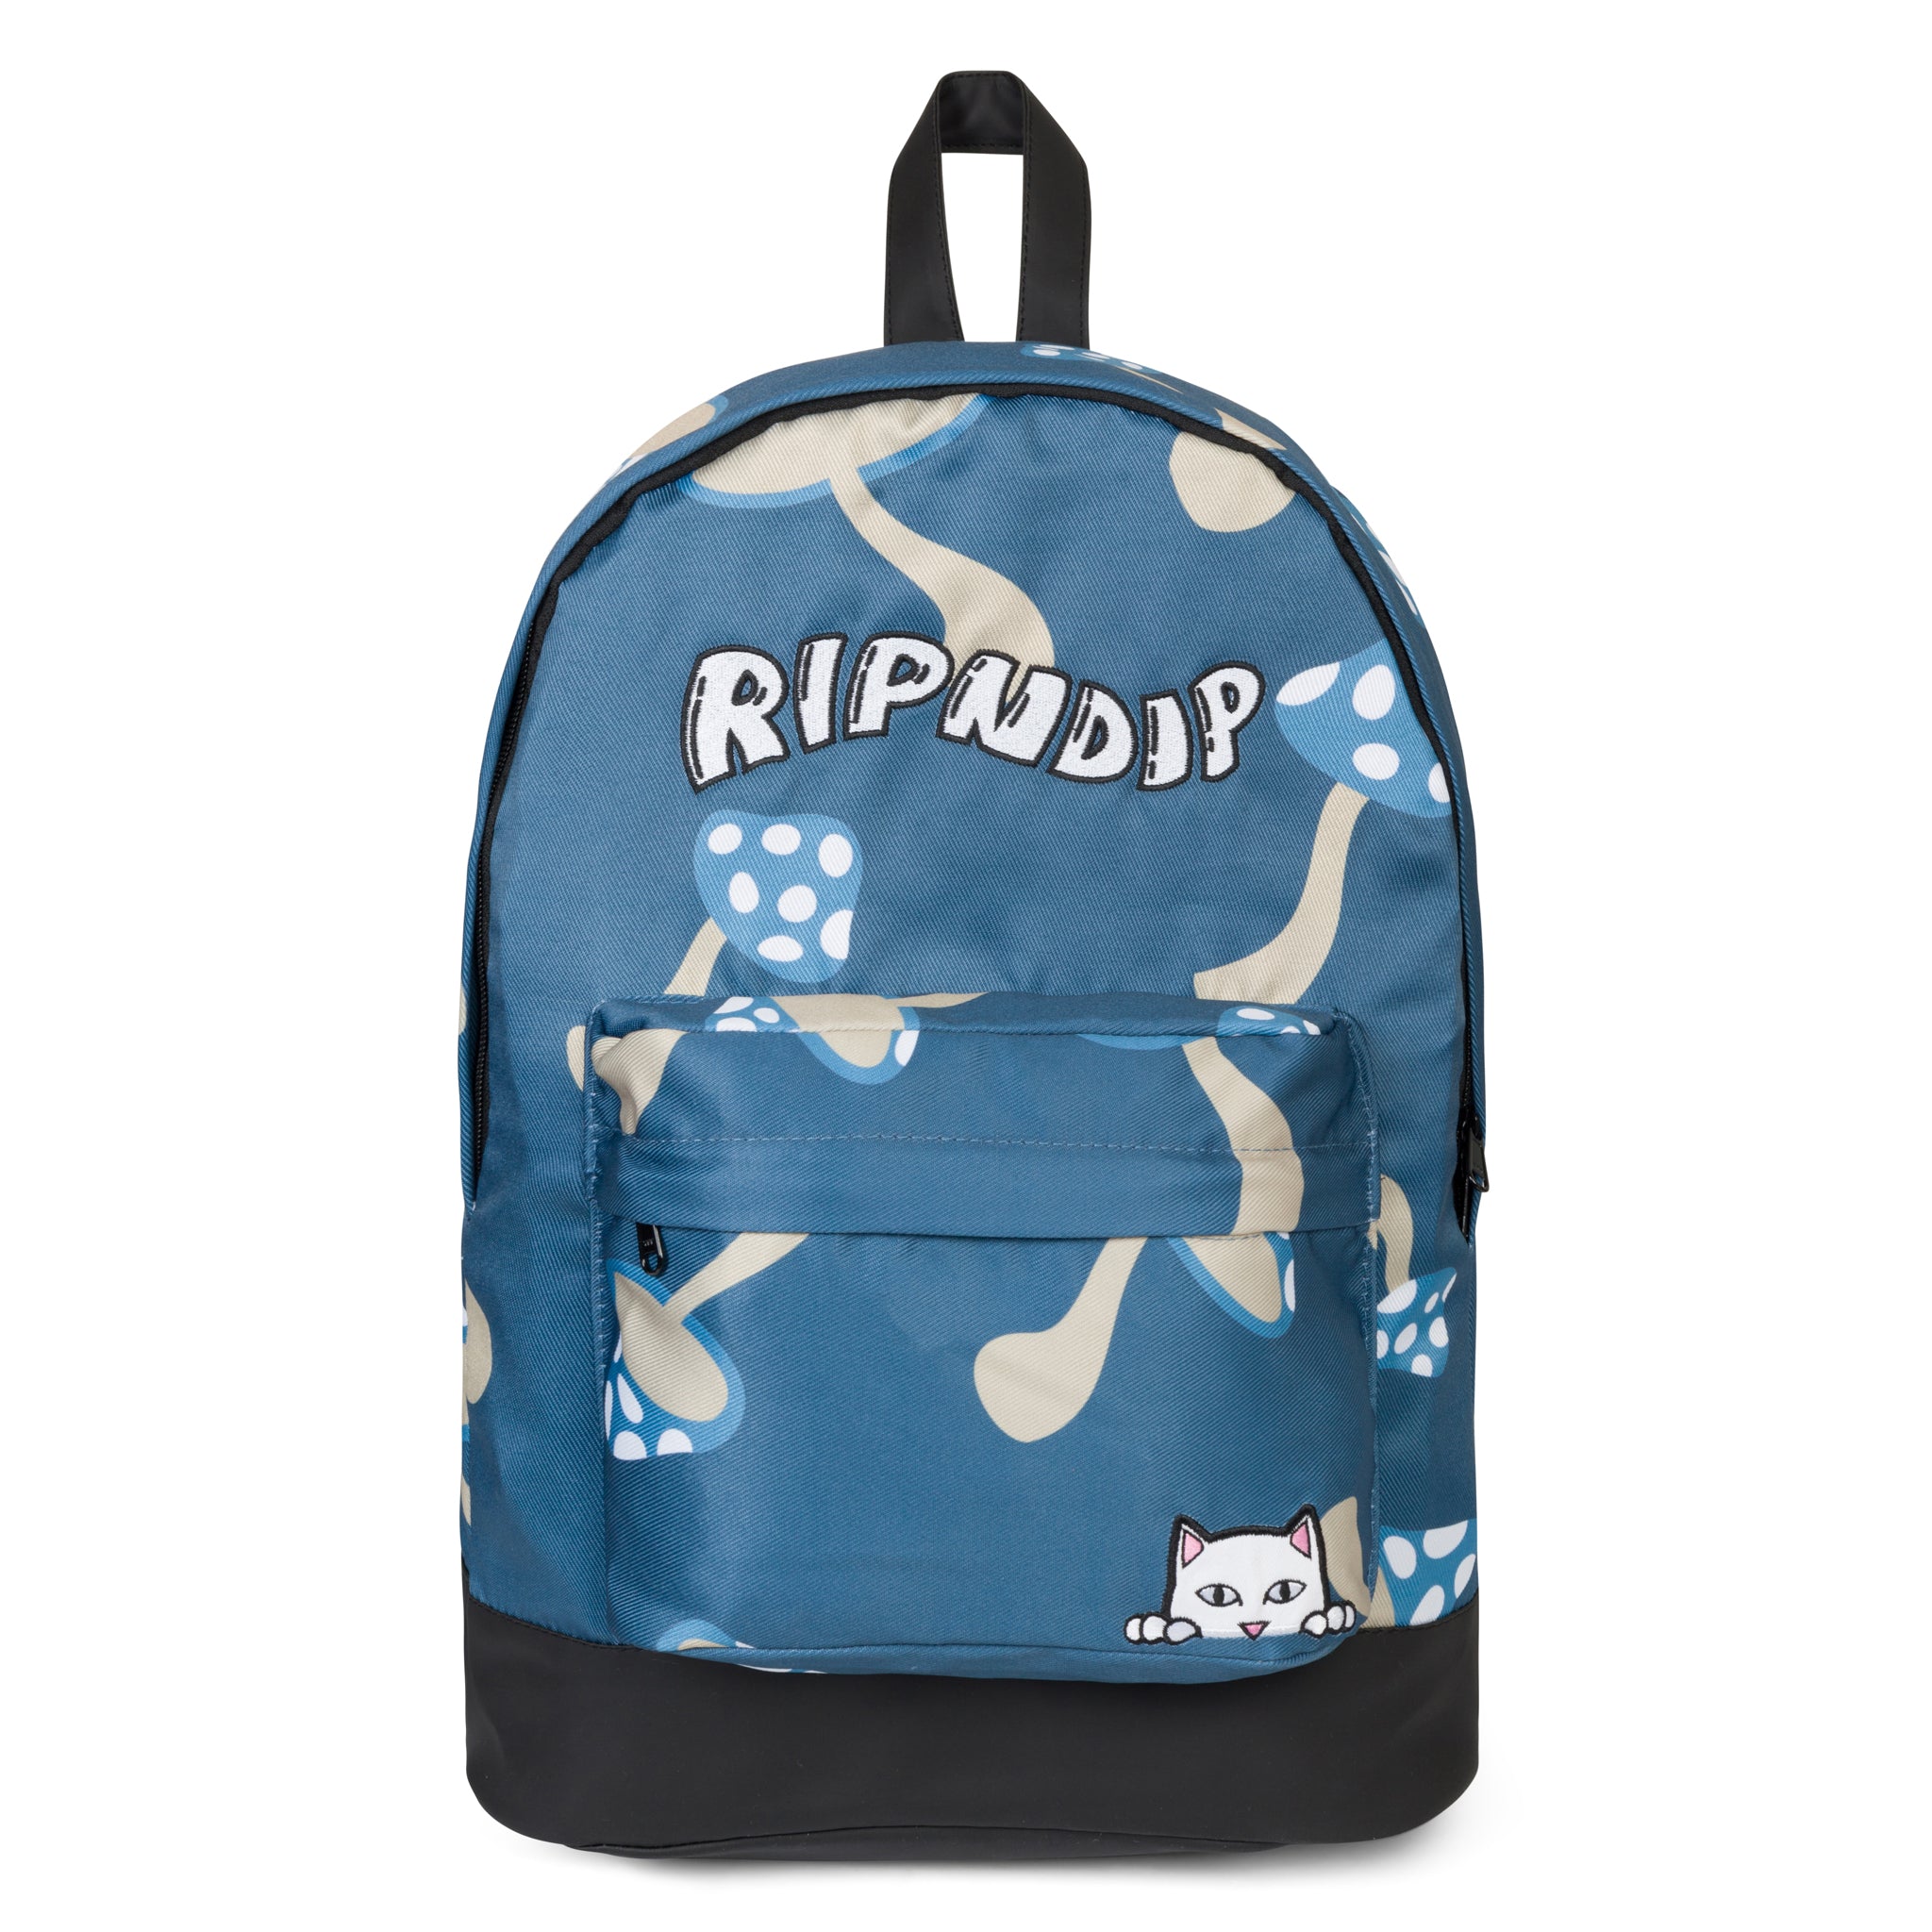 Ripndip - Backpacks – RIPNDIP